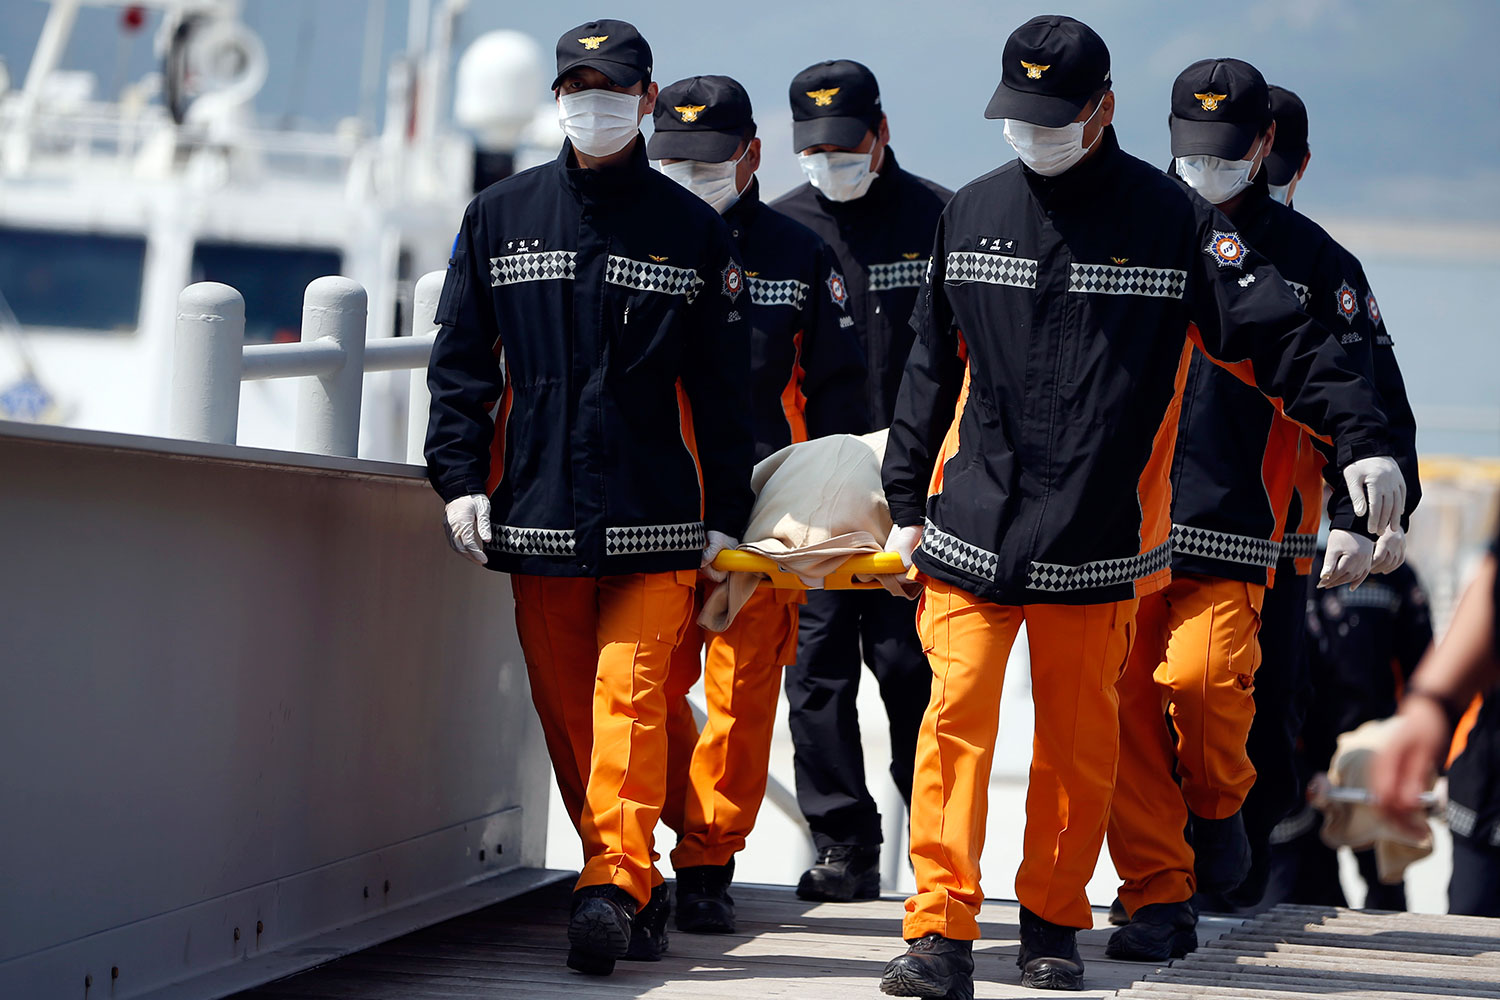 La presidenta de Corea del Sur acusa de "asesinato" al capitán del ferry Sewol